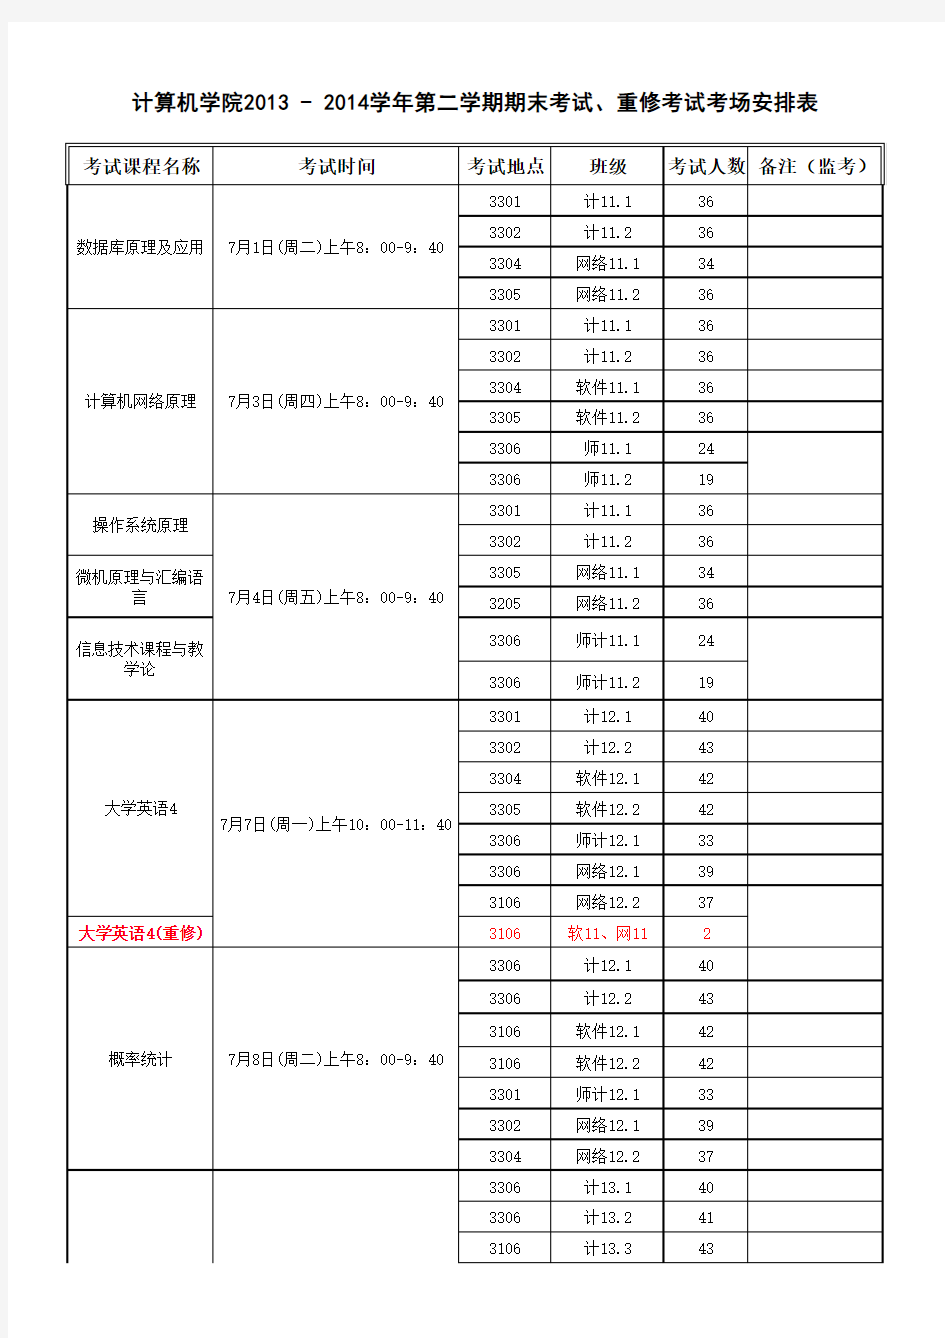 2013-2014(2)期末考试安排表(计算机学院)